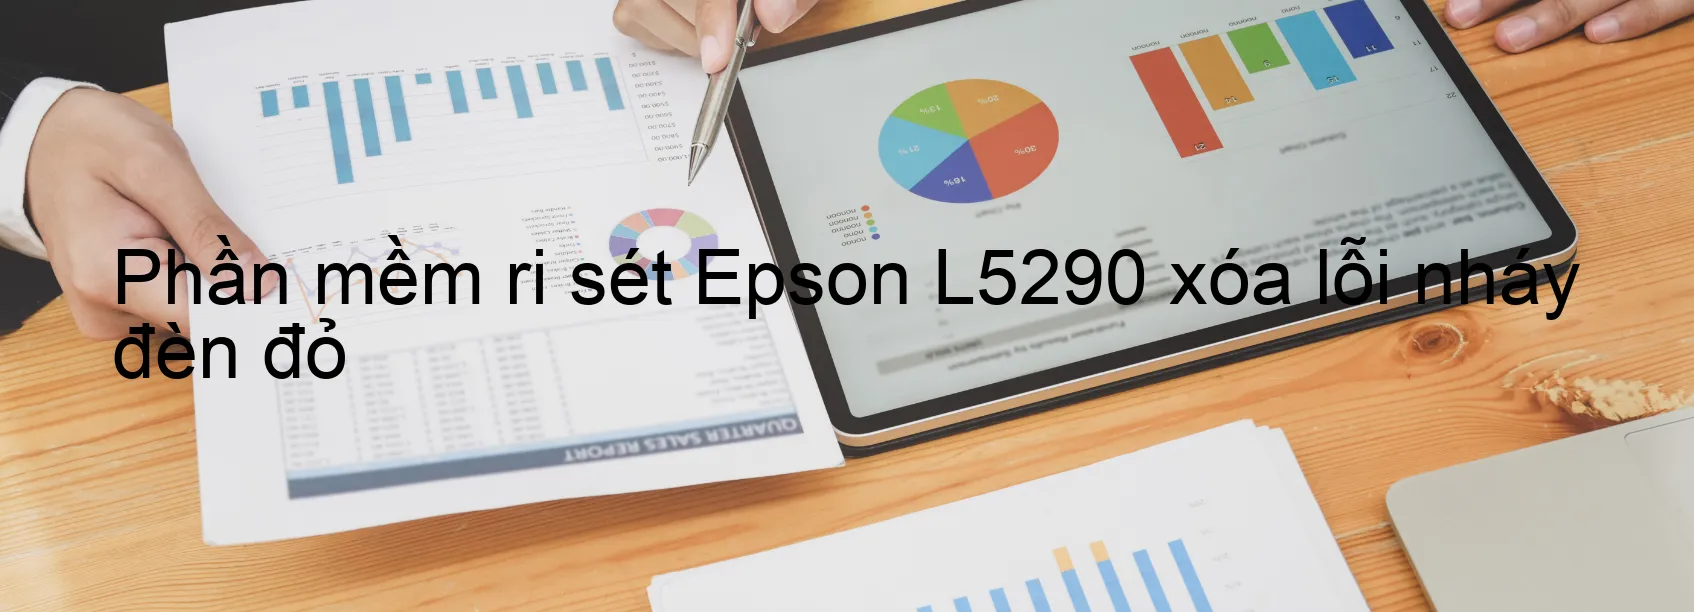 Phần mềm reset Epson L5290 xóa lỗi nháy đèn đỏ